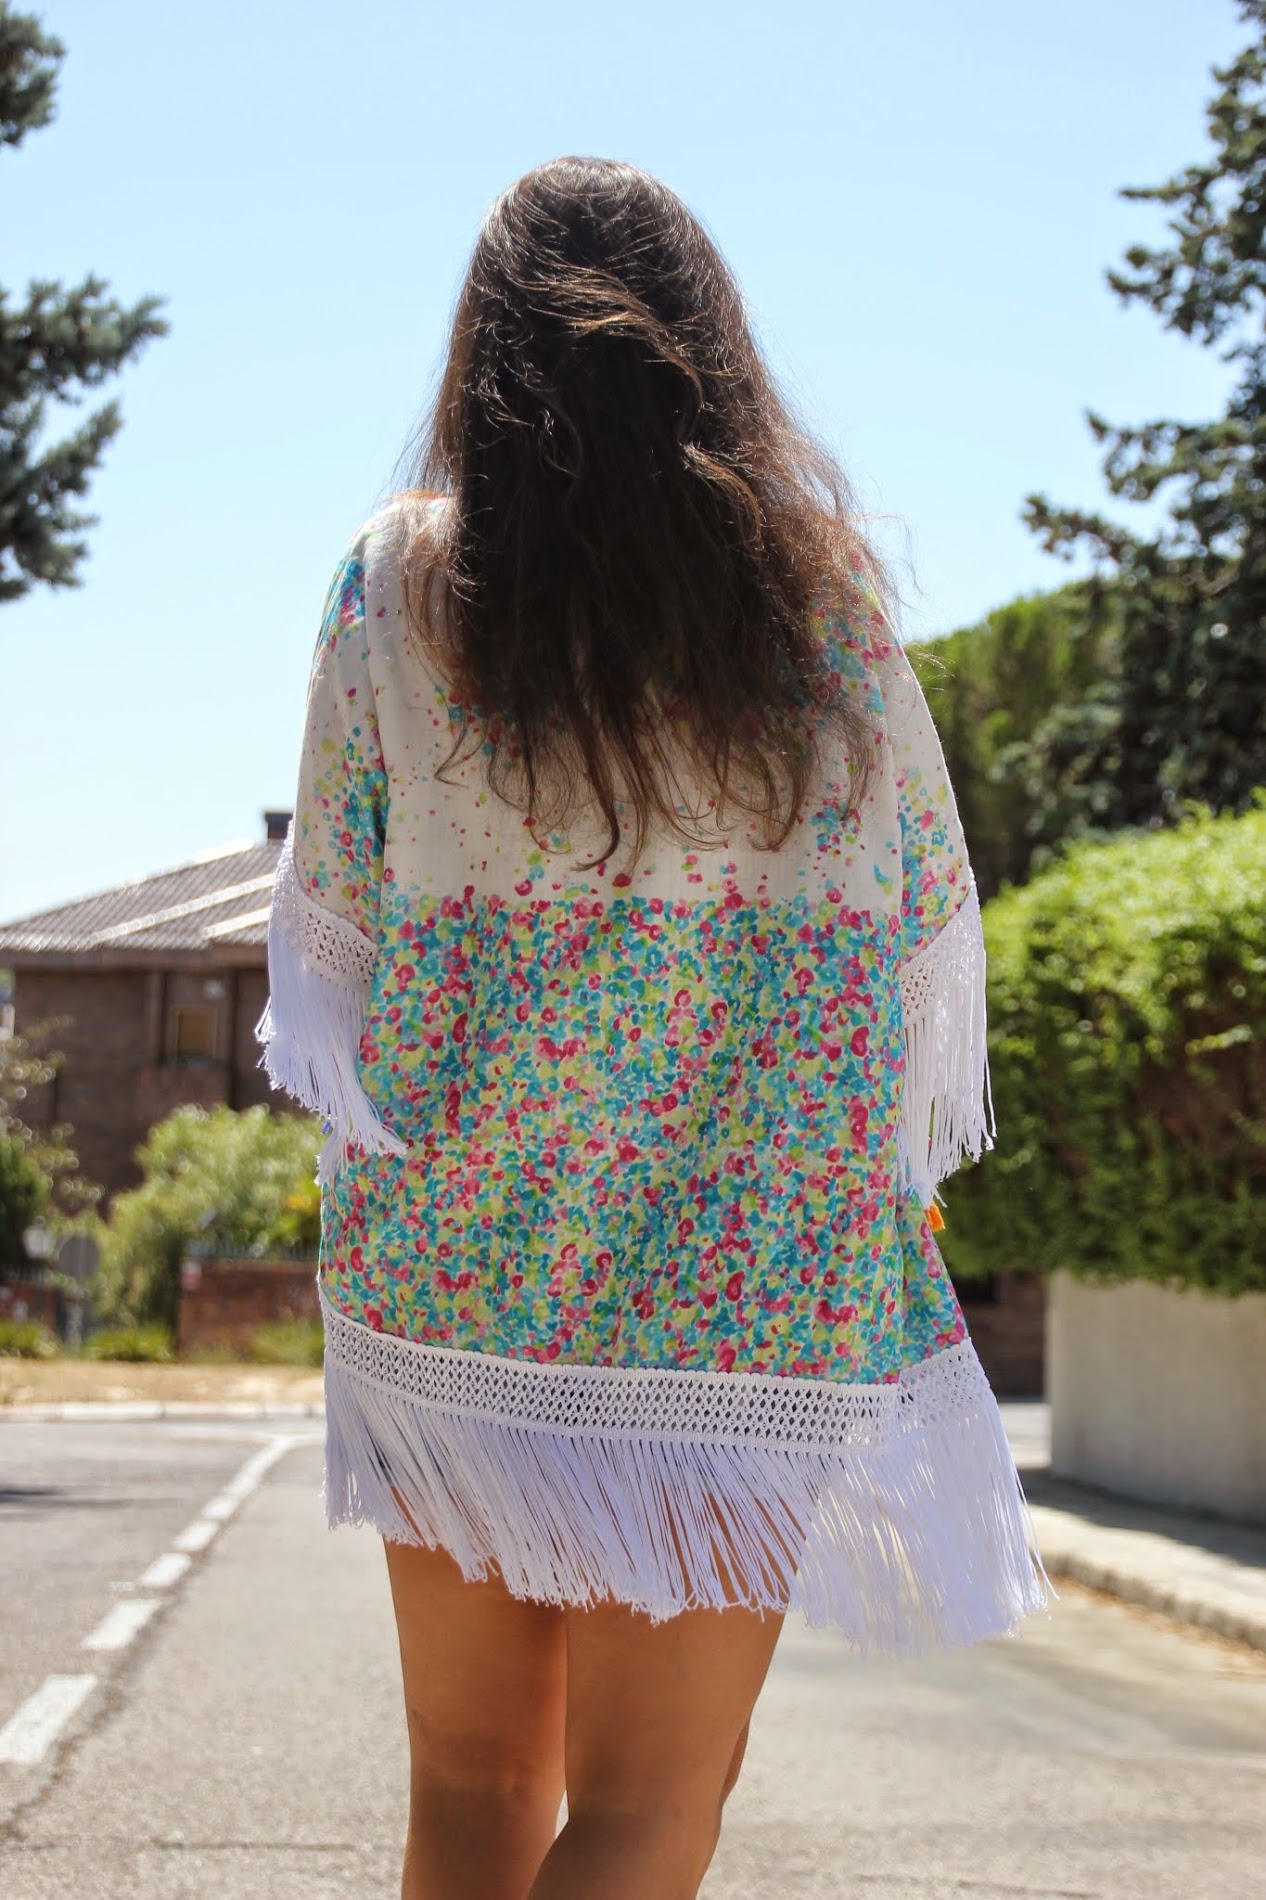 DIY Kimono con flecos (no hace falta patrones). Blog de costura y blog diy.